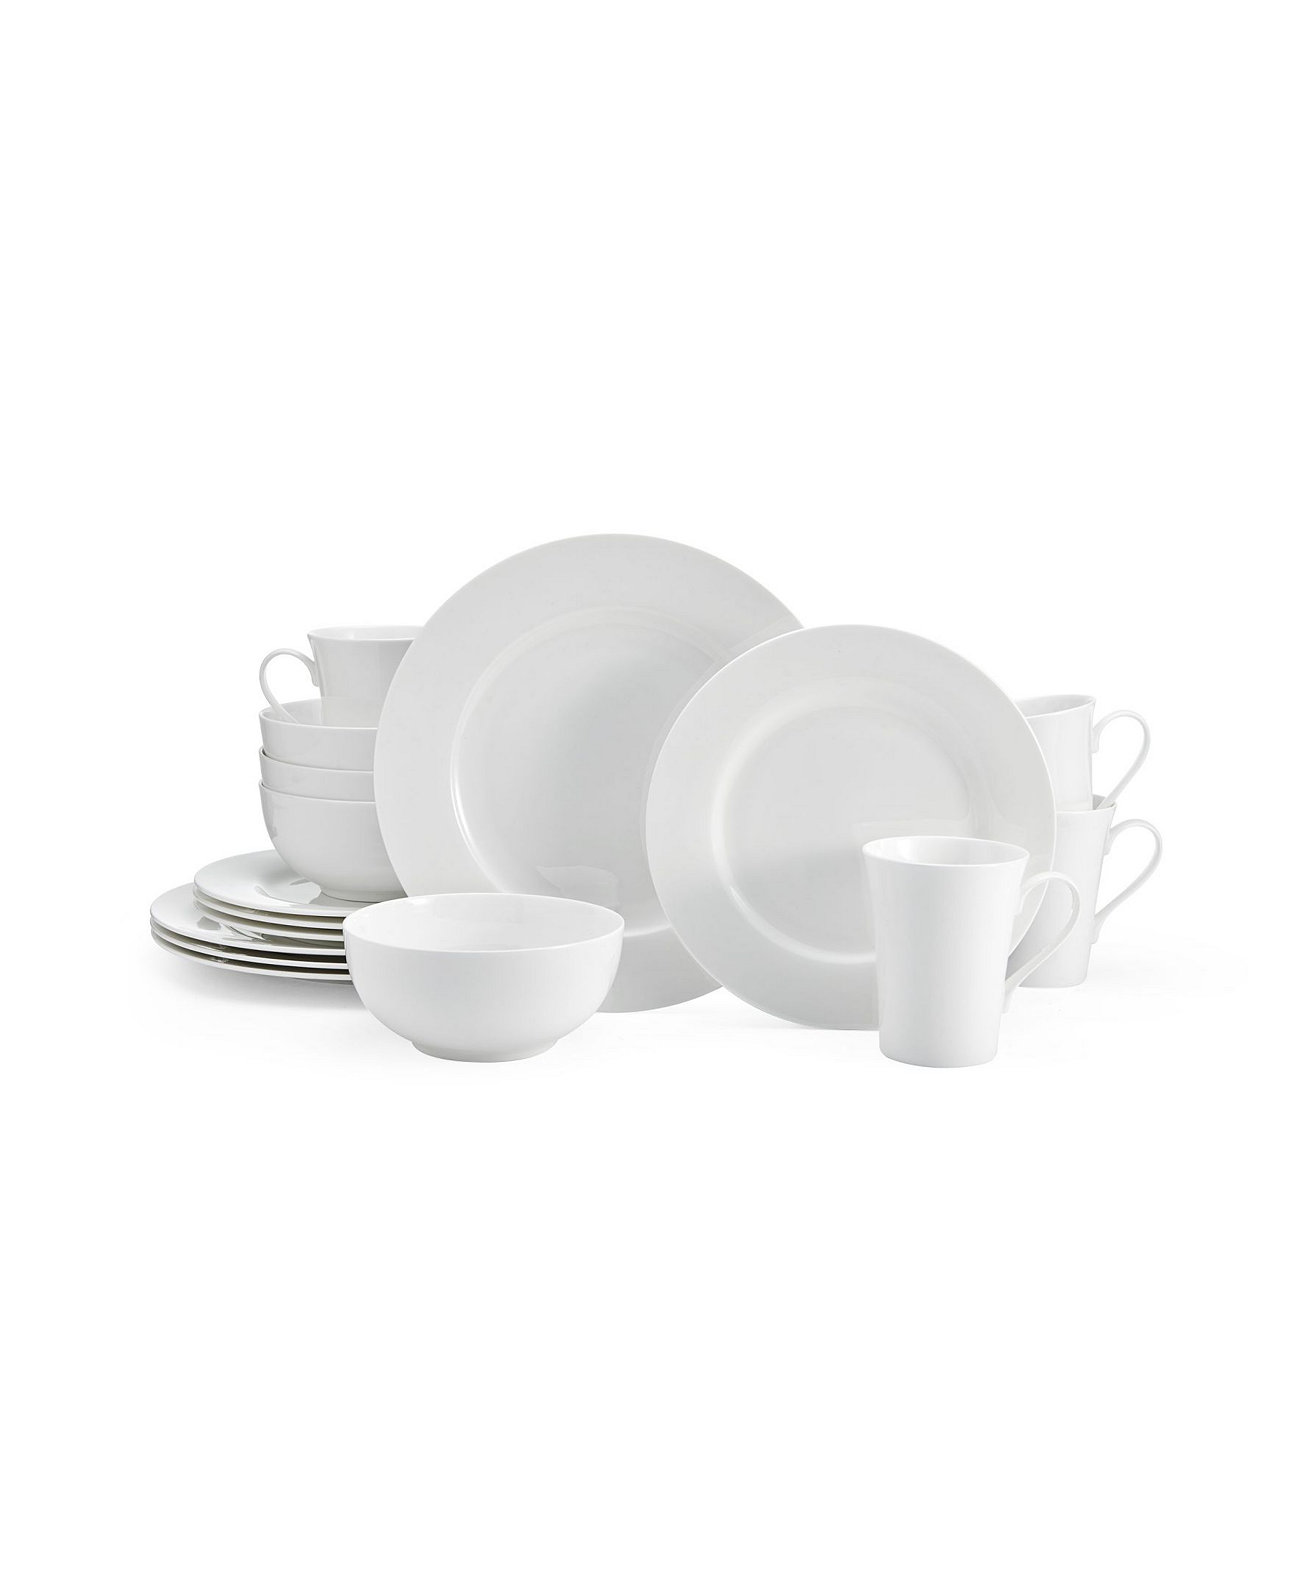 Набор столовой посуды Delray из 16 предметов, сервиз для 4 человек MIKASA